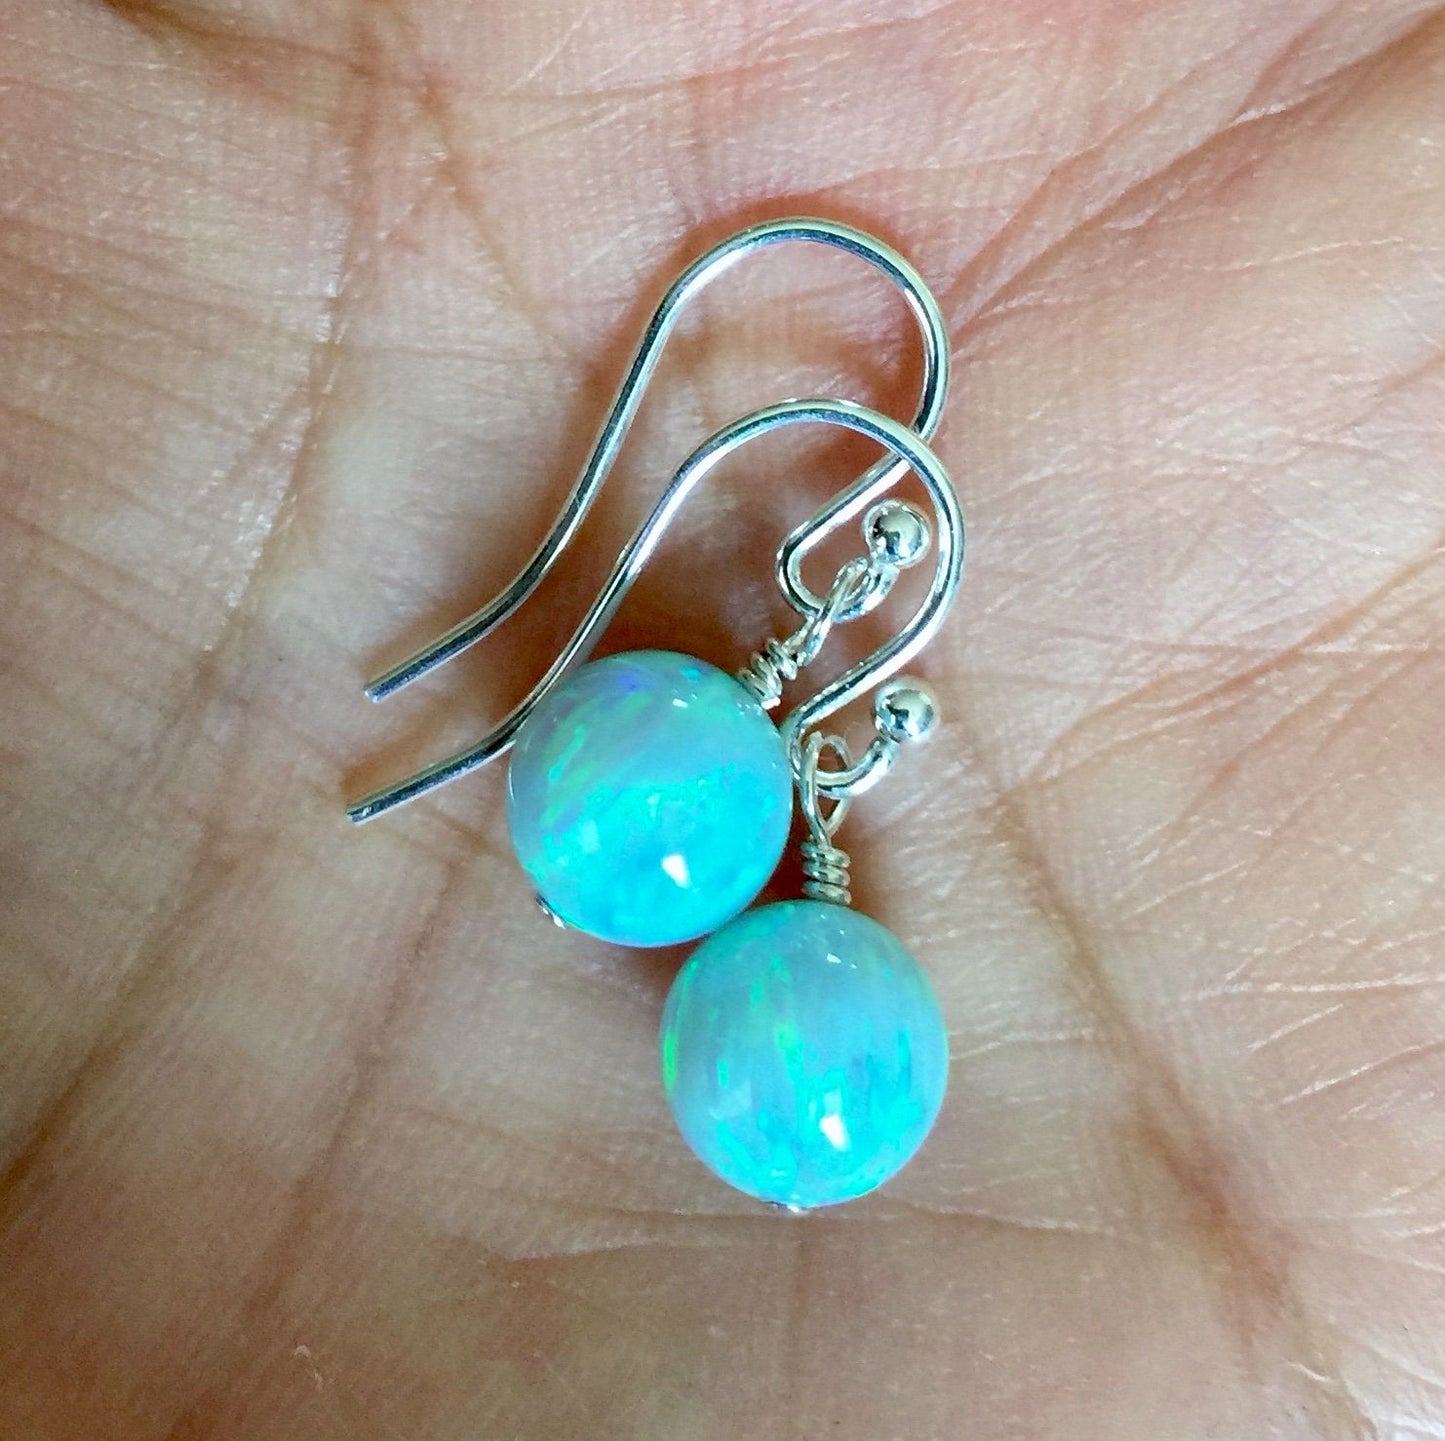 Opal Earrings in Sterling Silver,Silver Opal Earrings,Blue Opal Earrings,White Opal Earrings,Aqua Blue Opal Earrings,Opal Dangle Earrings